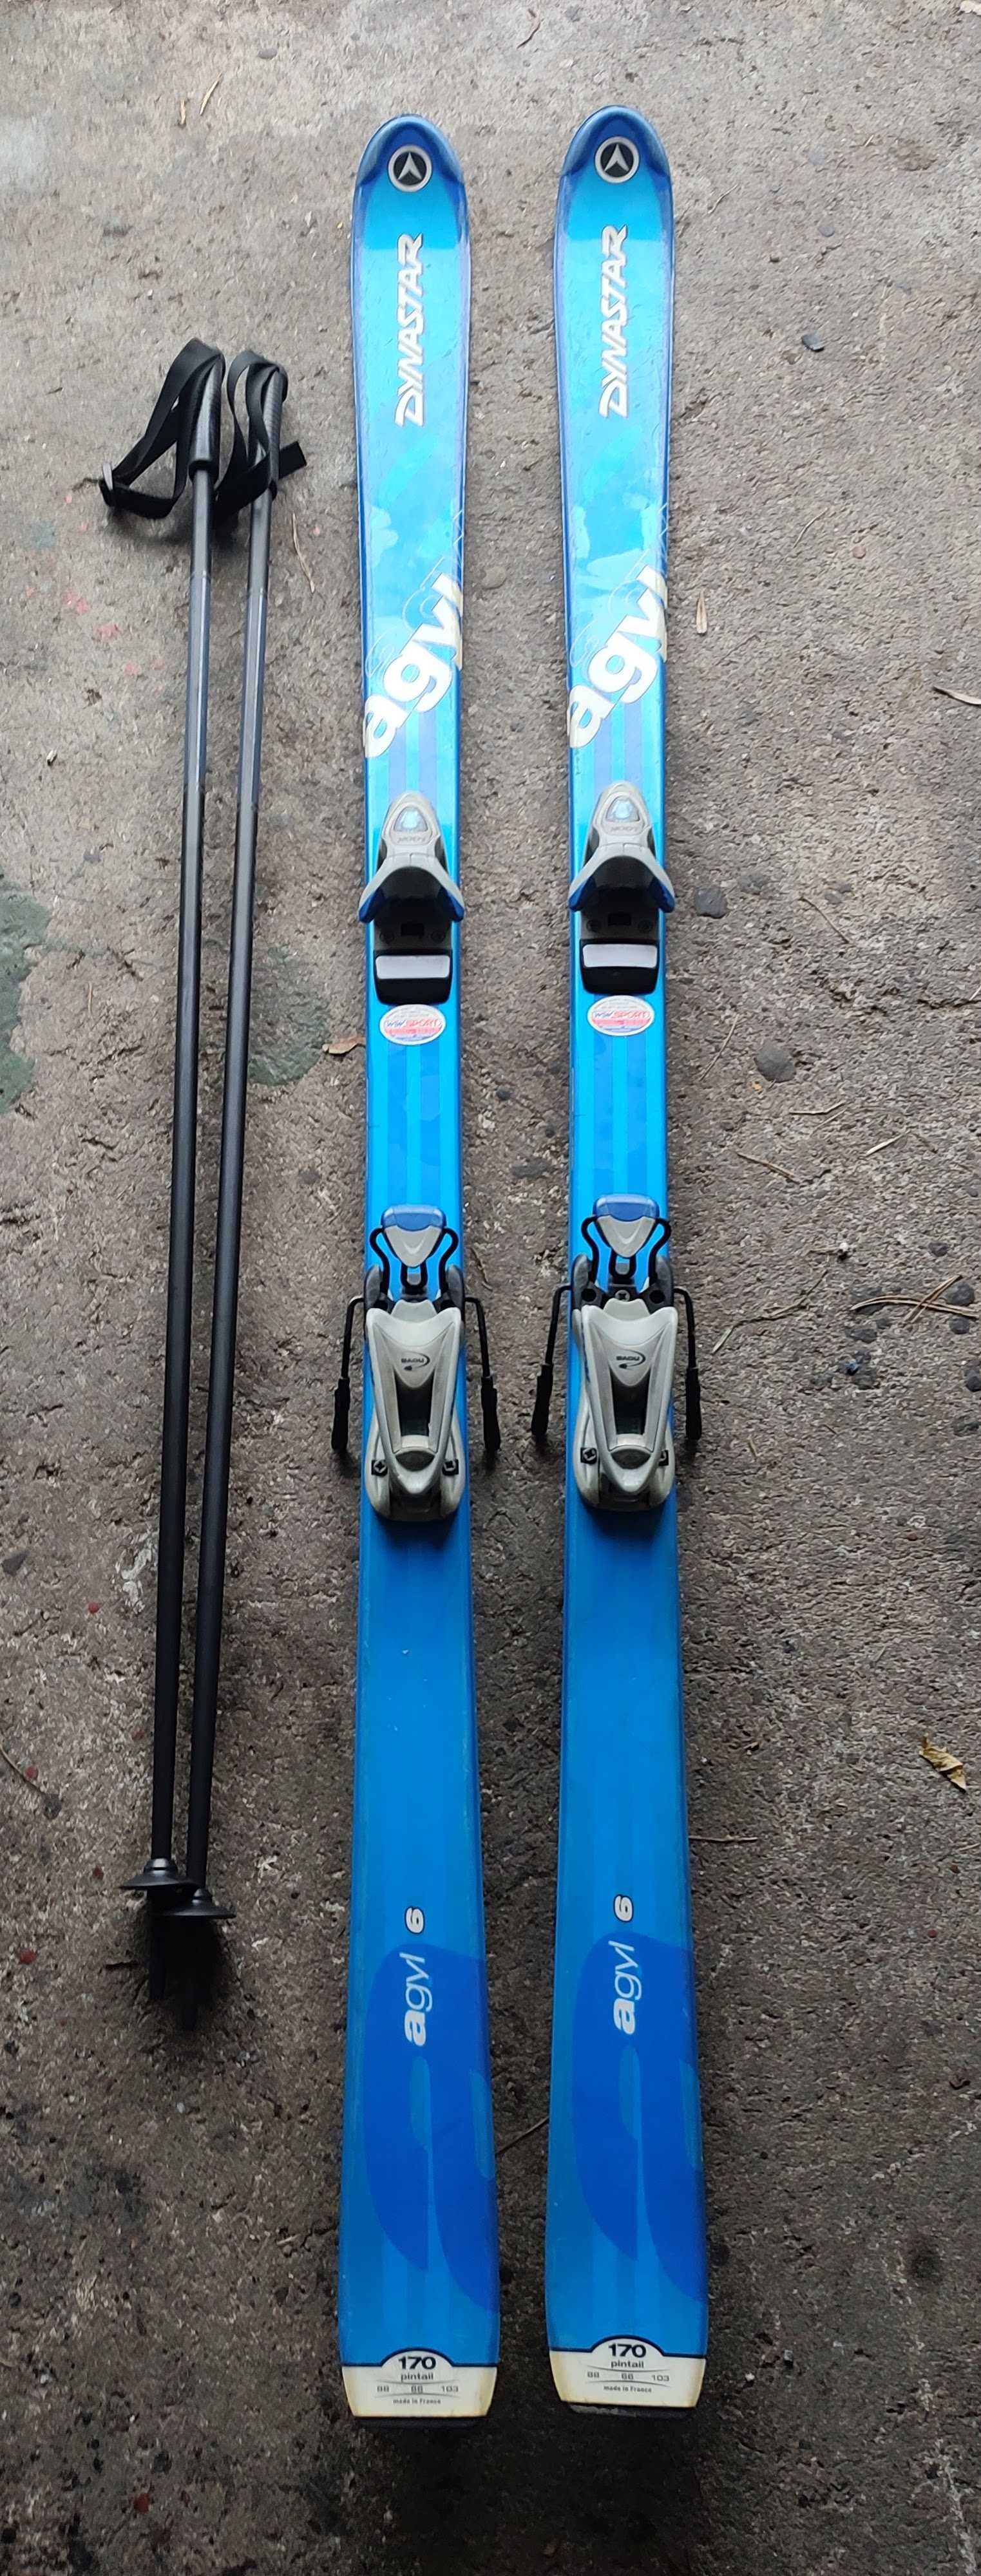 Narty Dynastar Agyl 6 długość 170cm + kijki narciarskie 125cm